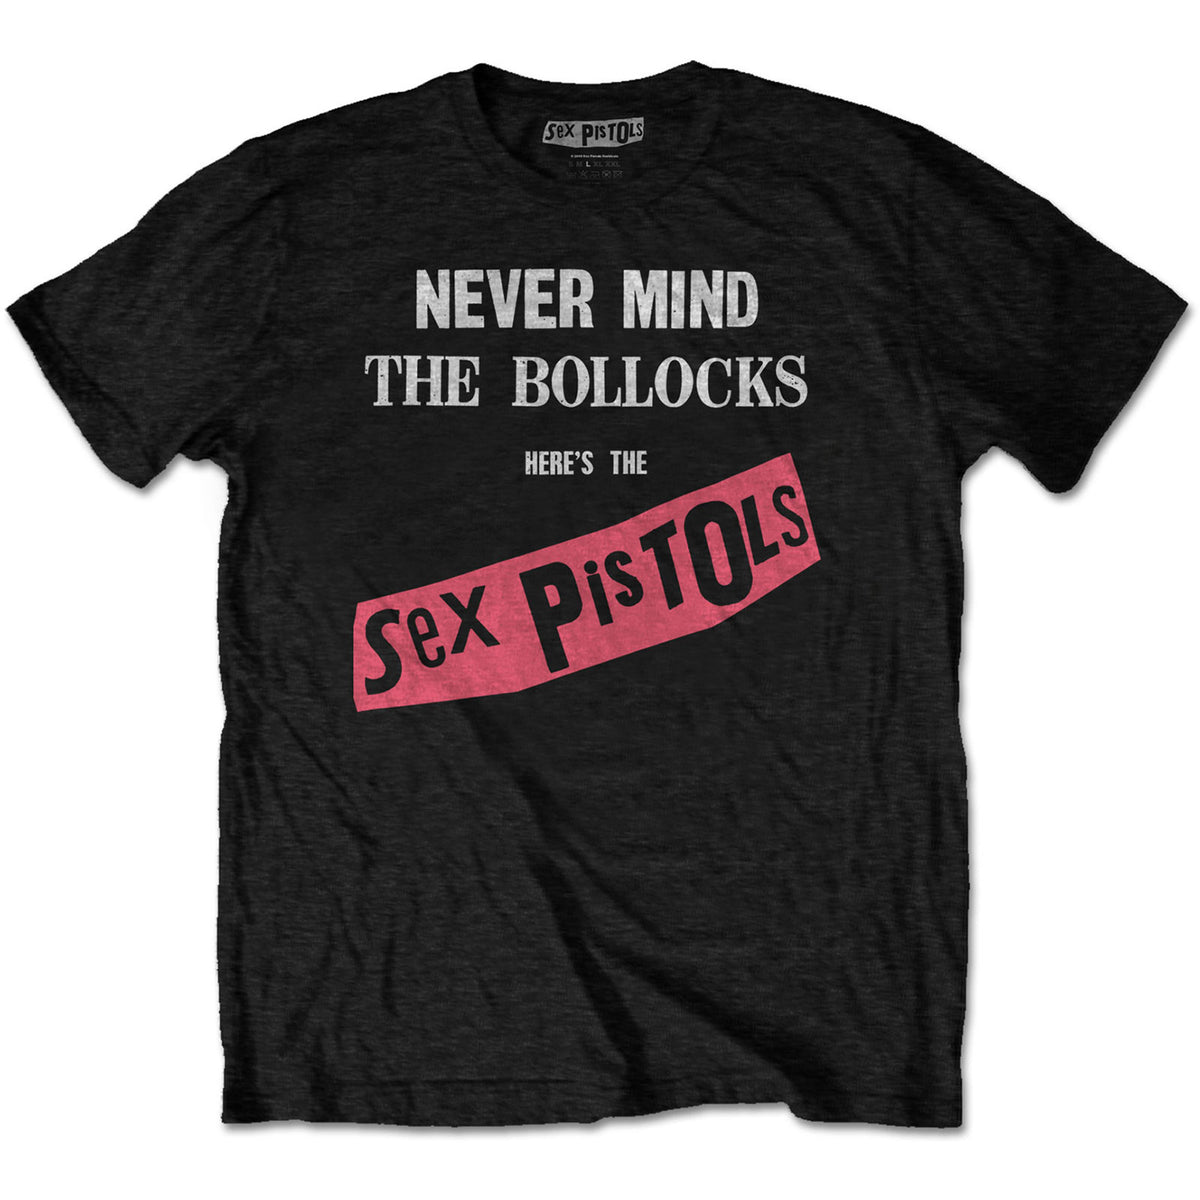 Sex Pistols Never Mind Original Album Cover Black Tee